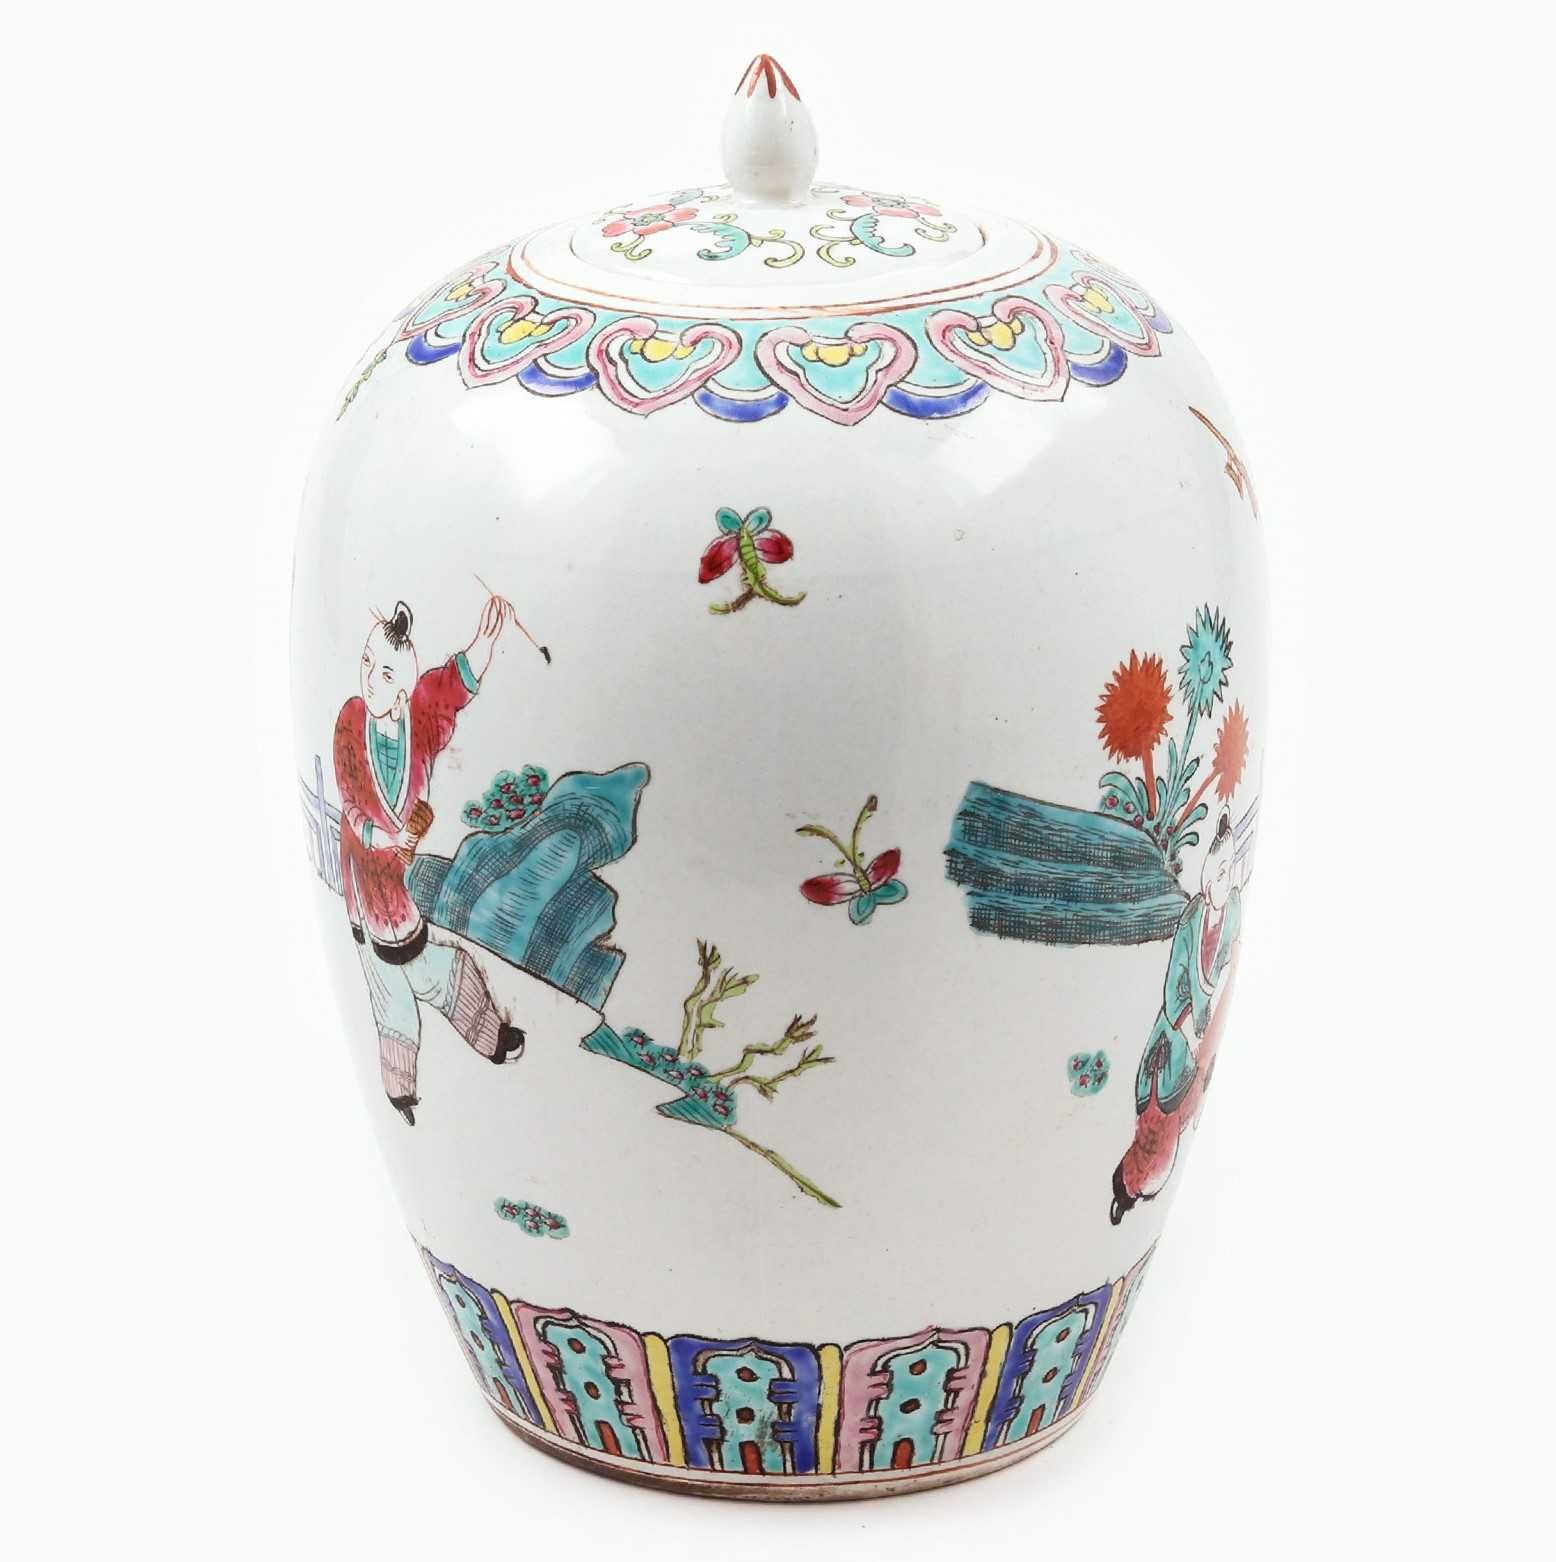 Frasco de Gengibre da família Rosa com tampa em porcelana chinesa